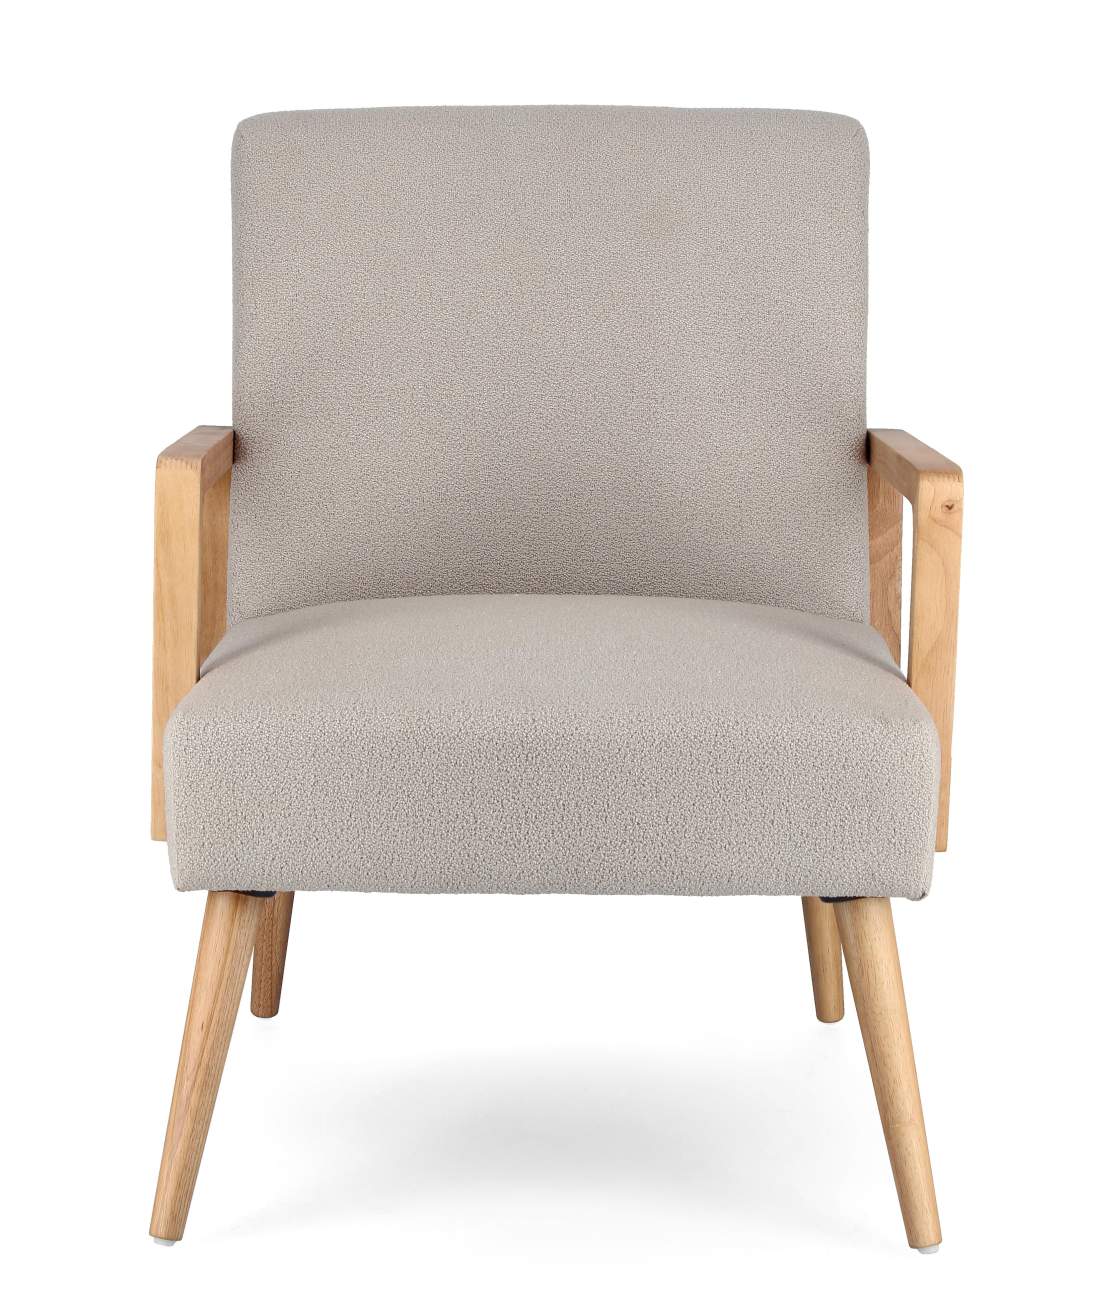 Der Sessel Verina überzeugt mit seinem modernen Stil. Gefertigt wurde er aus einem Stoff-Bezug, welcher einen hellgrauen Farbton besitzt. Das Gestell ist aus Kautschukholz und hat eine natürliche Farbe. Der Sessel verfügt über eine Armlehne.